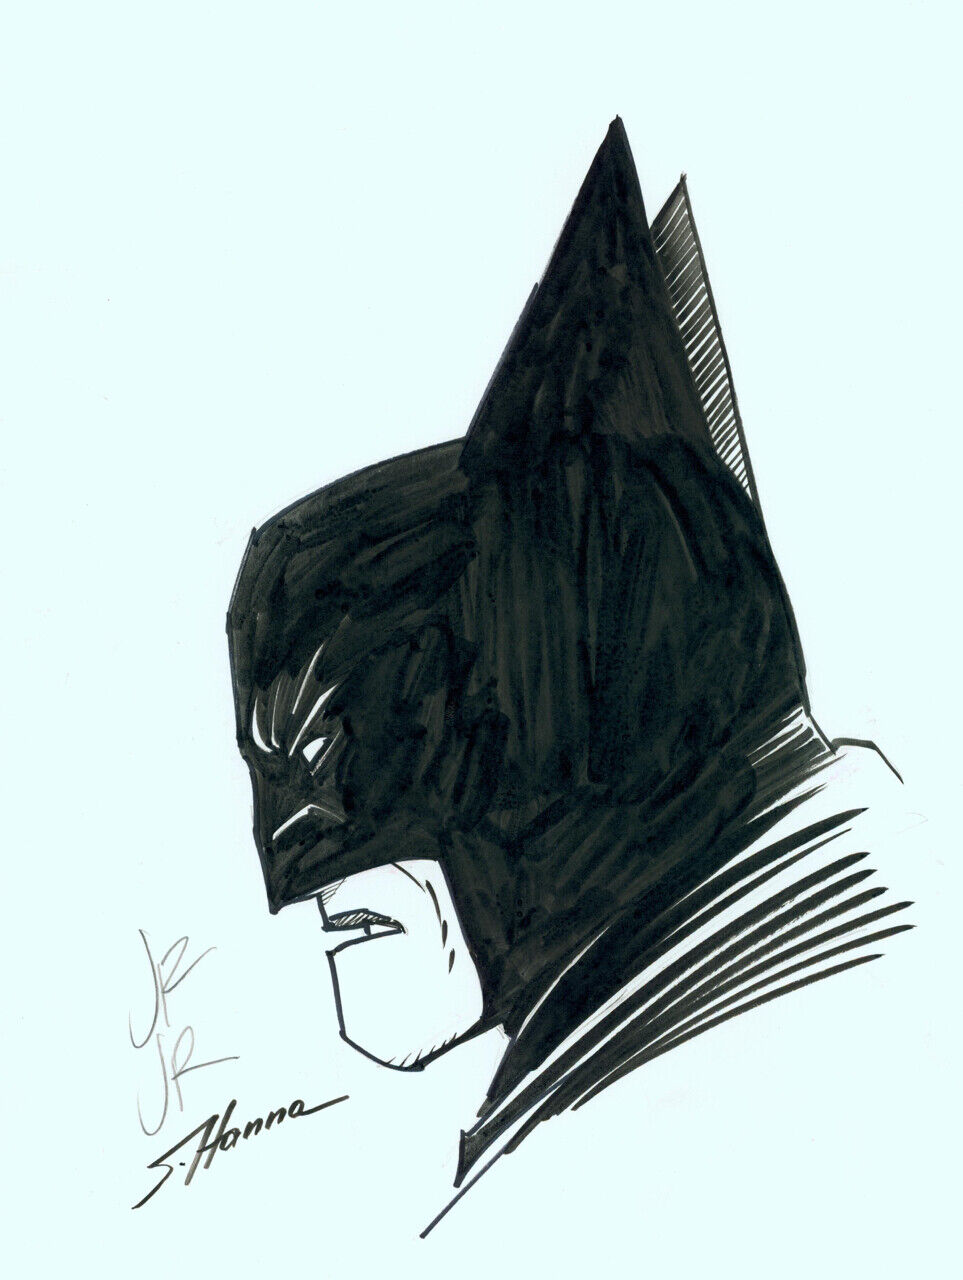 John Romita Jr. & Scott Hanna Signed Original Art Sketch Batman The Dark Knight